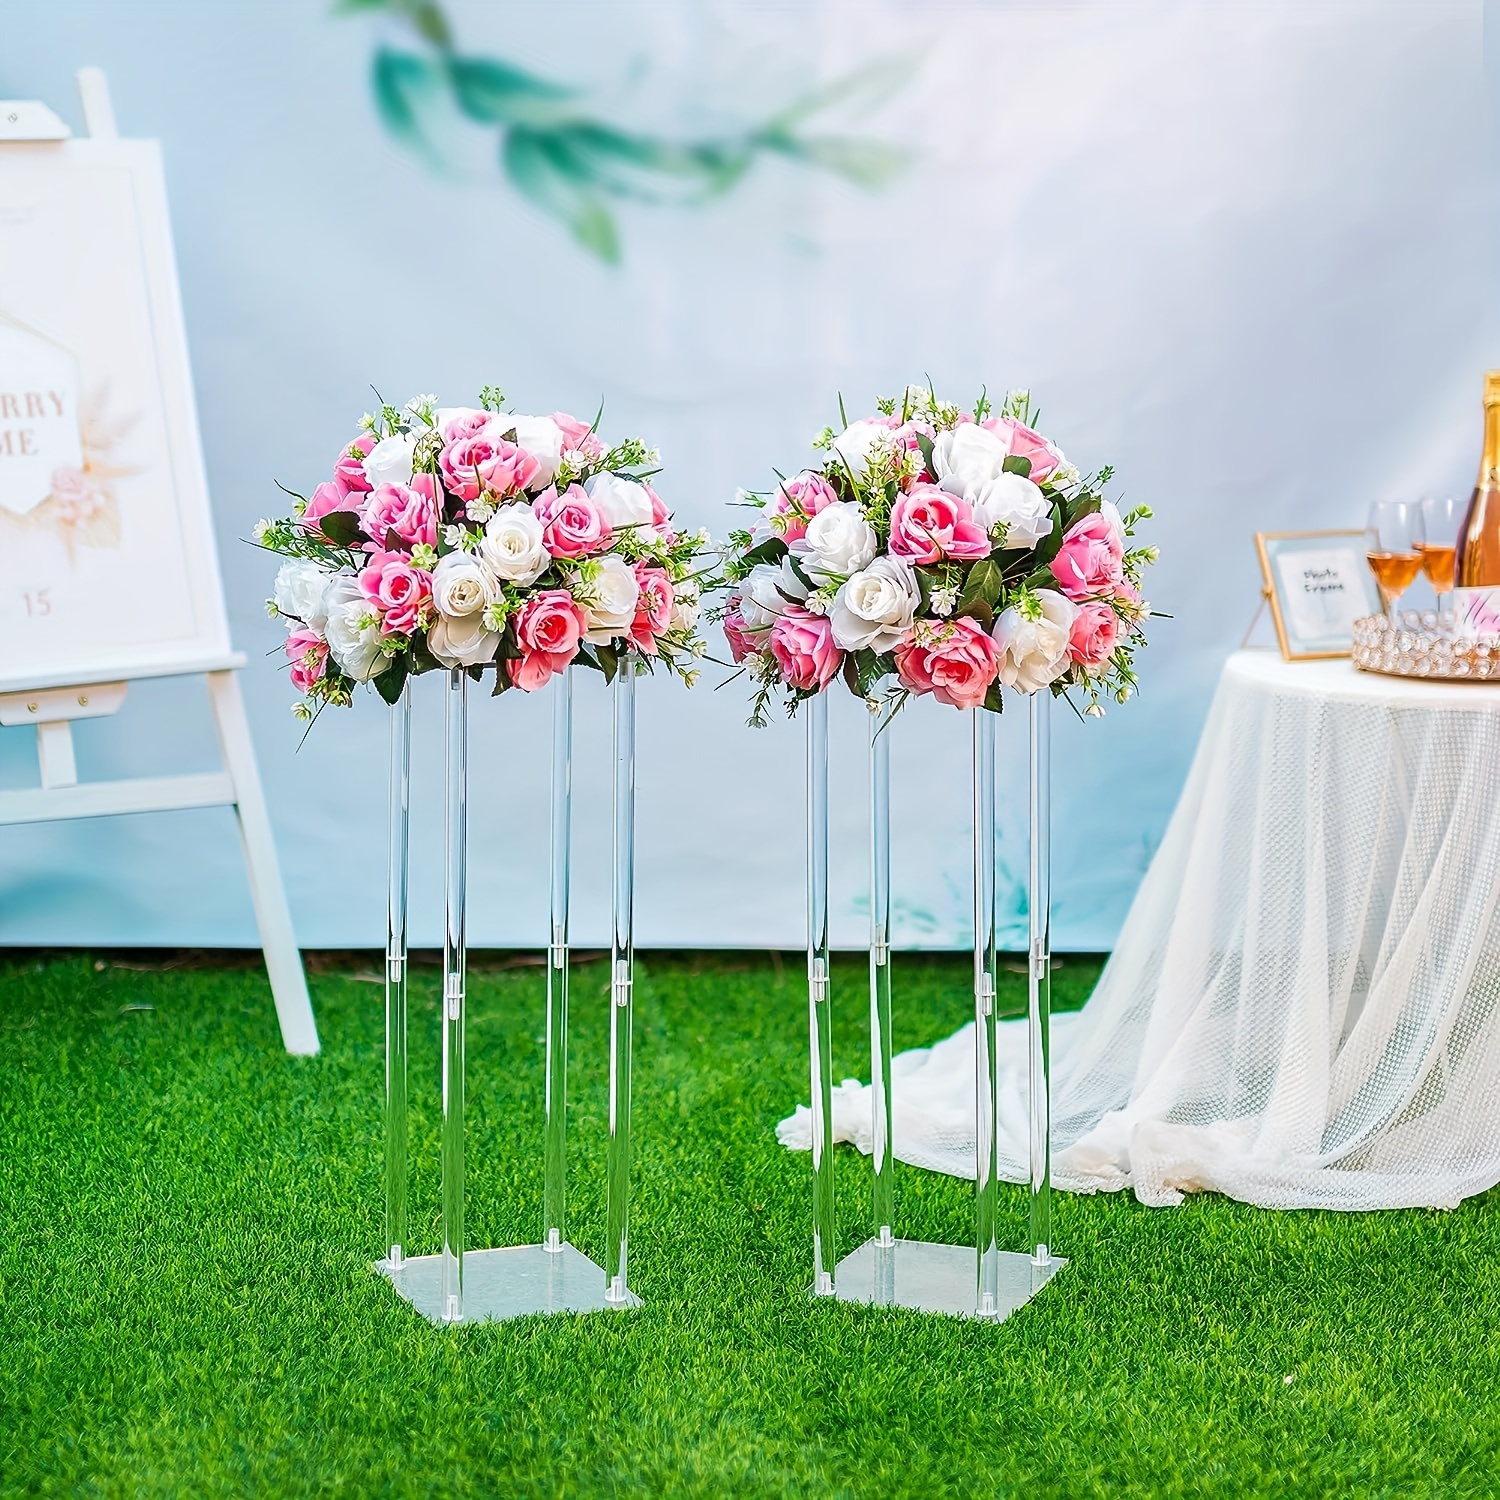 Acrylic Vases Wedding Centerpieces Decorative Flower Arrangement Stand for  Desk Decor 80cm x 20cm 